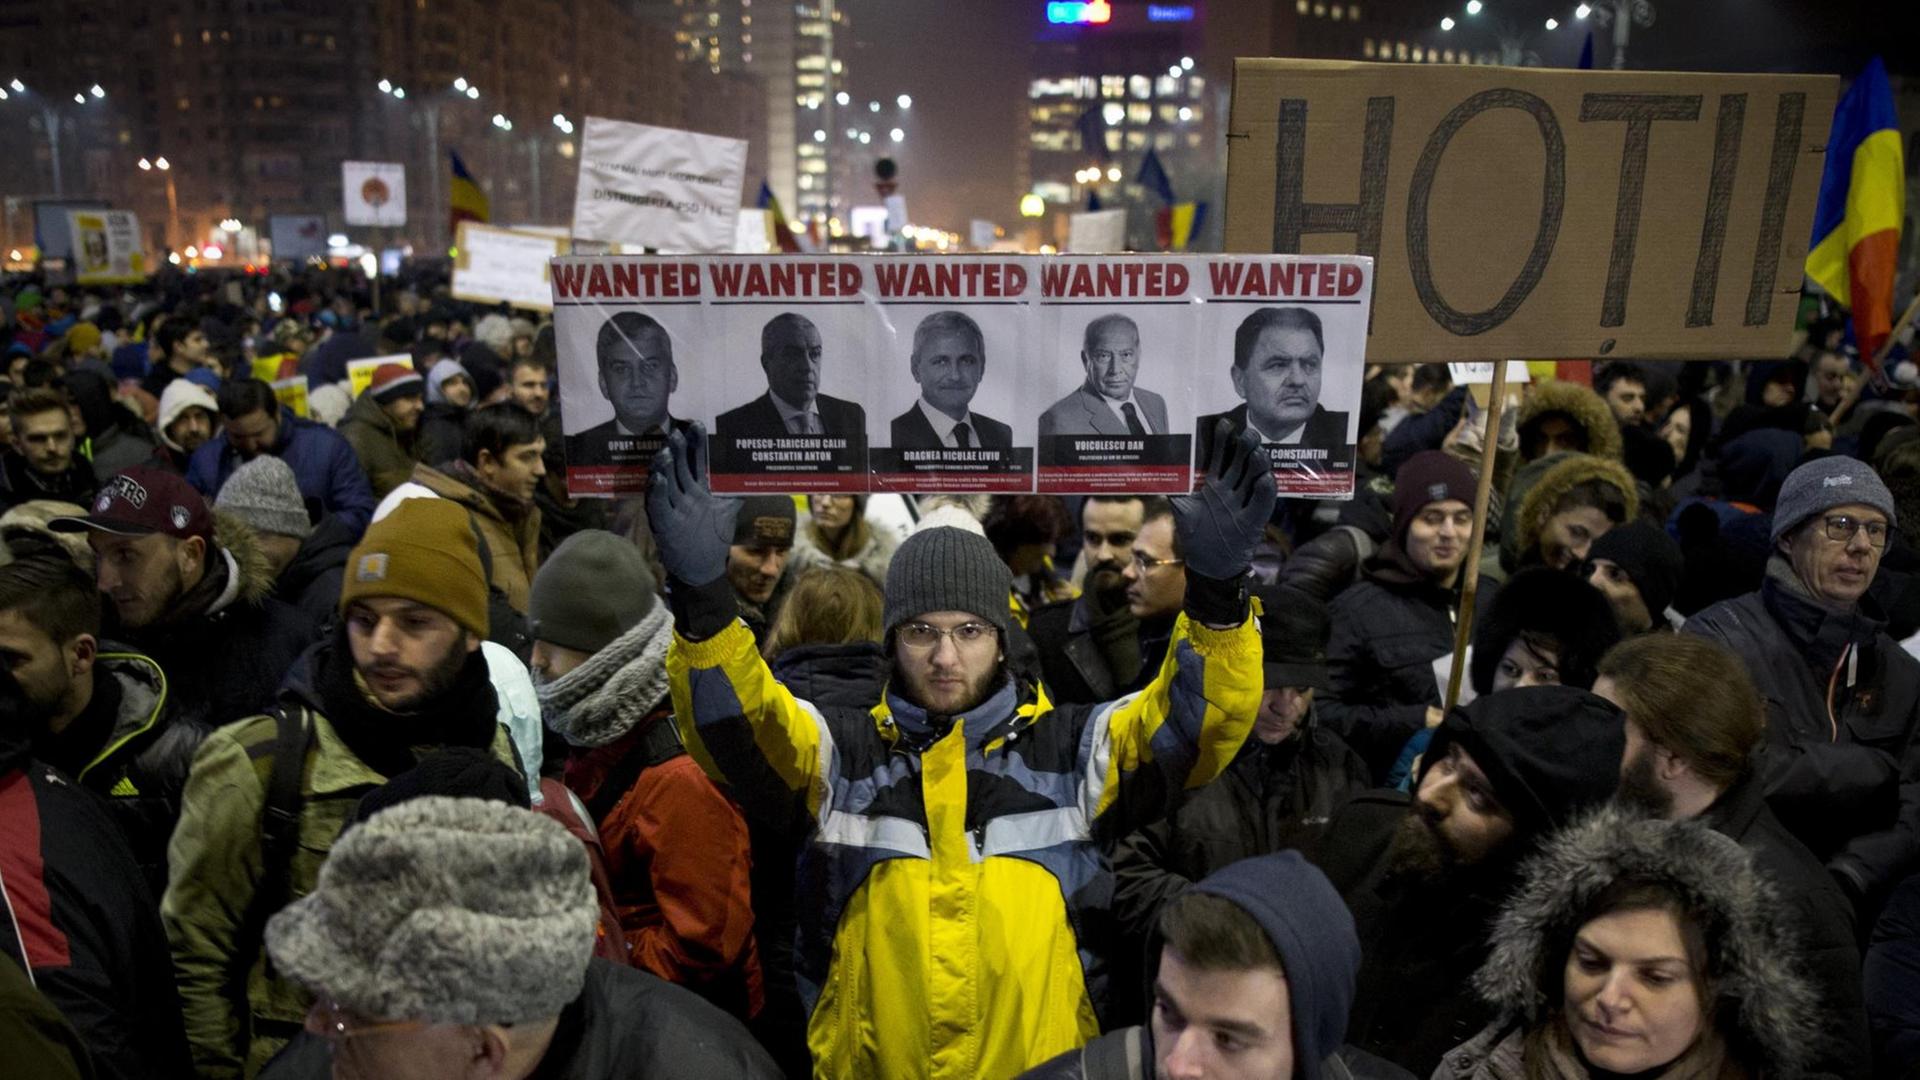 Ein Mann hält in einer Masse von Demonstranten in Bukarest ein Schild hoch, auf dem hochrangige rumänische Politiker mit dem Text "Wanted" zu sehen sind.